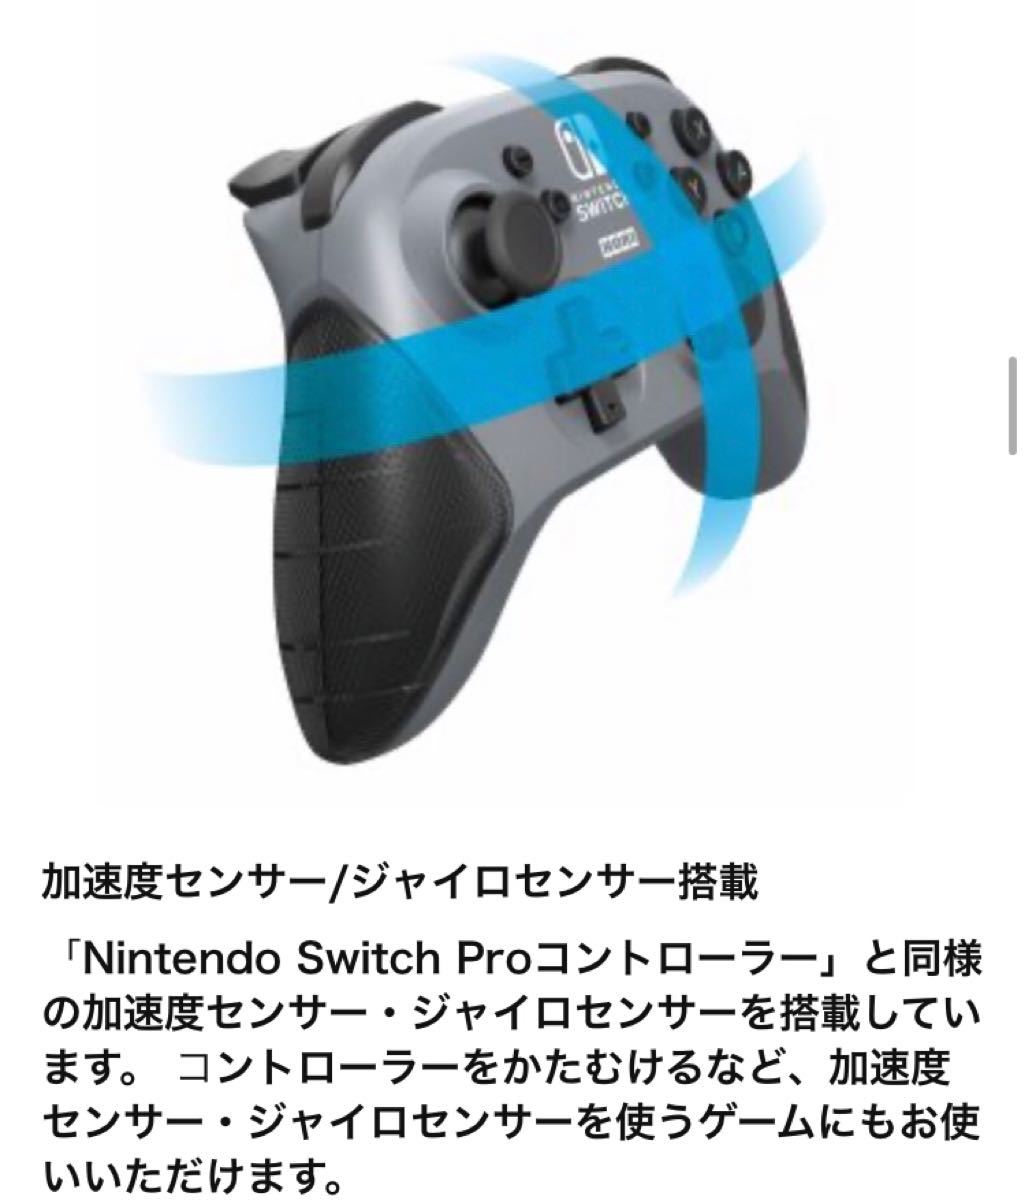 任天堂ライセンス商品 ワイヤレスホリパッド for Nintendo Switch 4961818030824 コントローラー